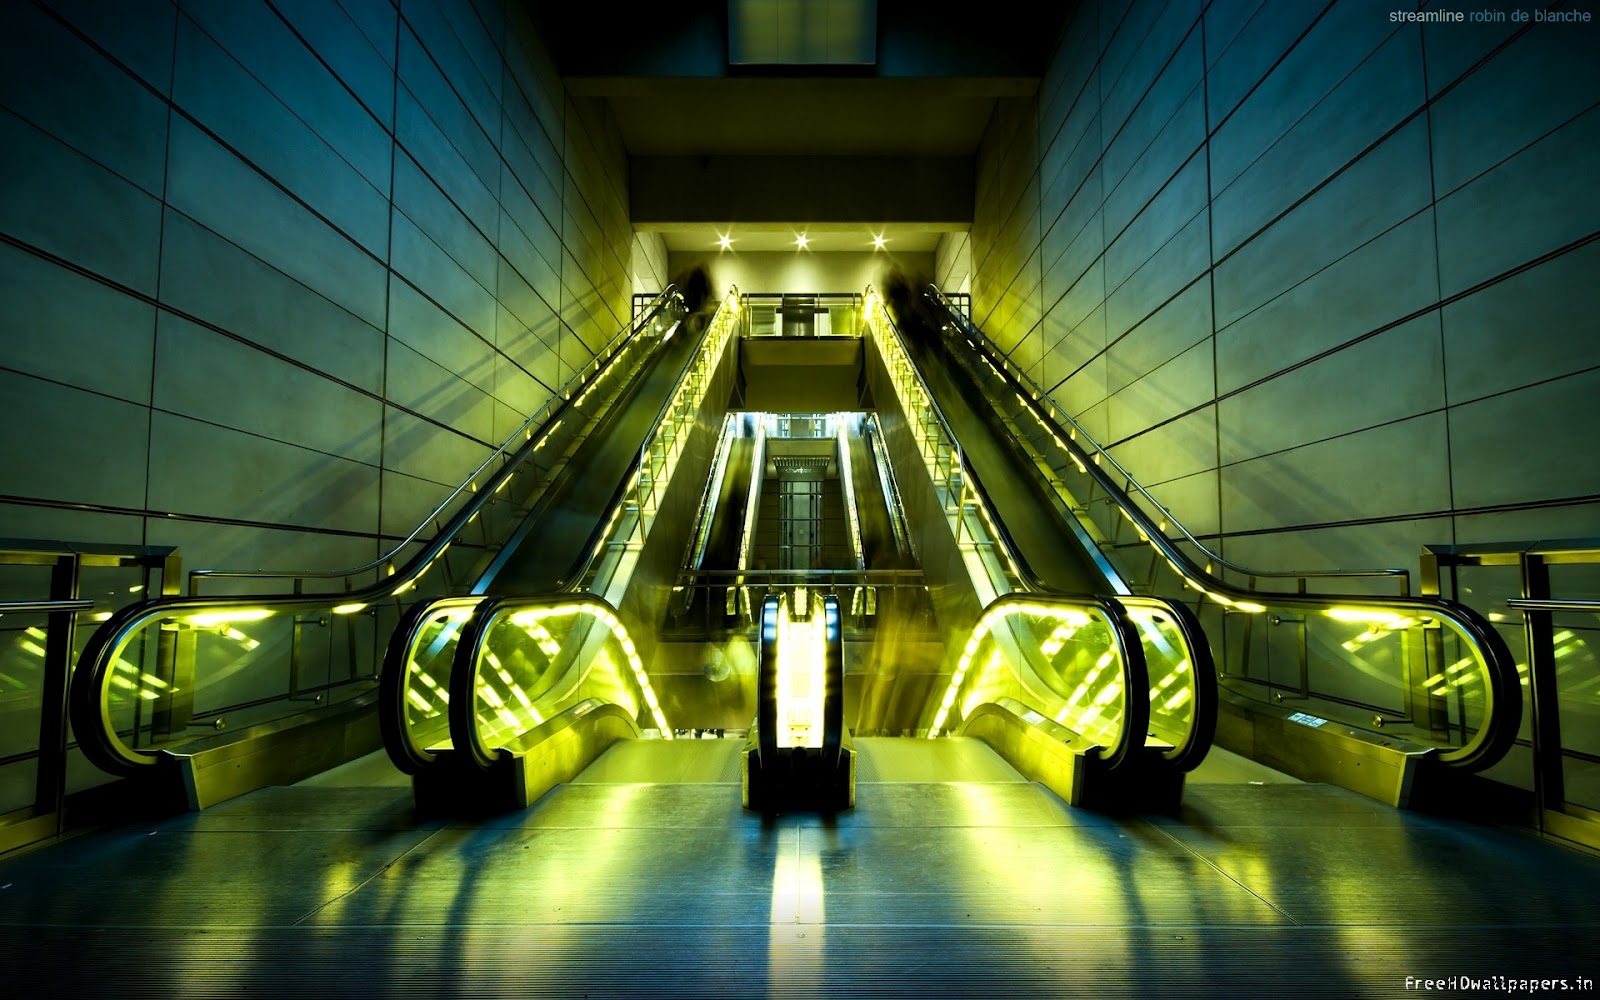 http://2.bp.blogspot.com/-f6JEA_8uHwM/UClITA6aGbI/AAAAAAAAGp4/QzQx66t7QHM/s1600/wallpaper-illuminated-escalators-1920x1200.jpg